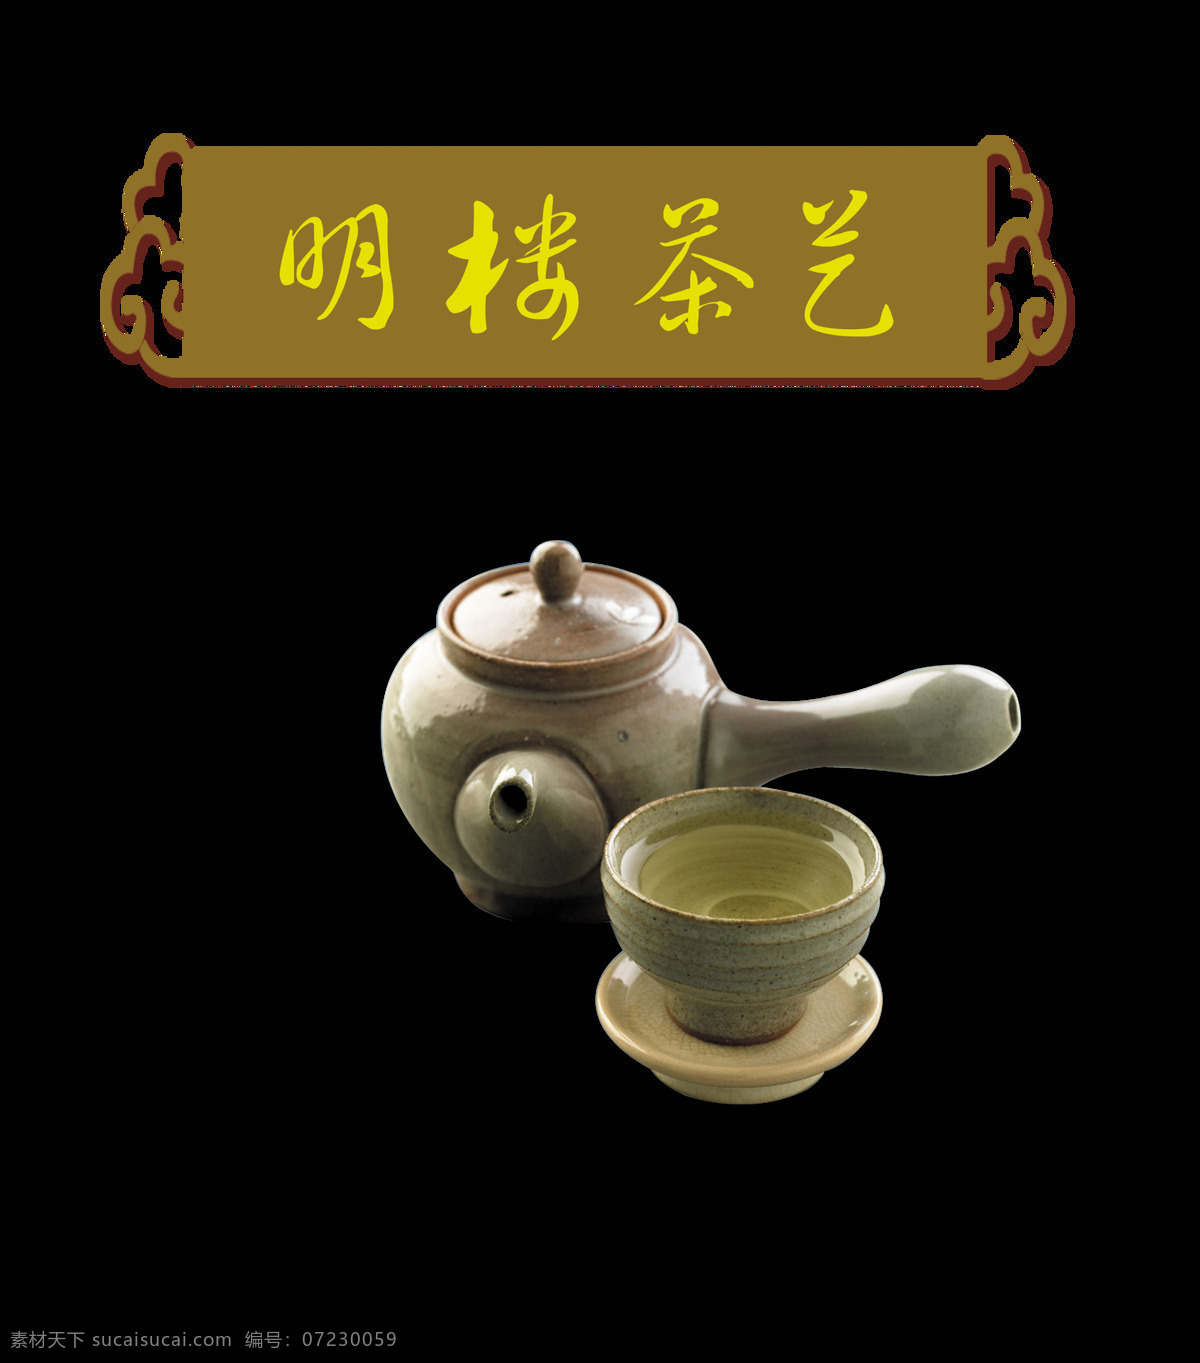 茶艺 茶壶 艺术 字 中国 风 中国风 古典 元素 广告 茶艺茶壶 艺术字 古风 免抠图 海报